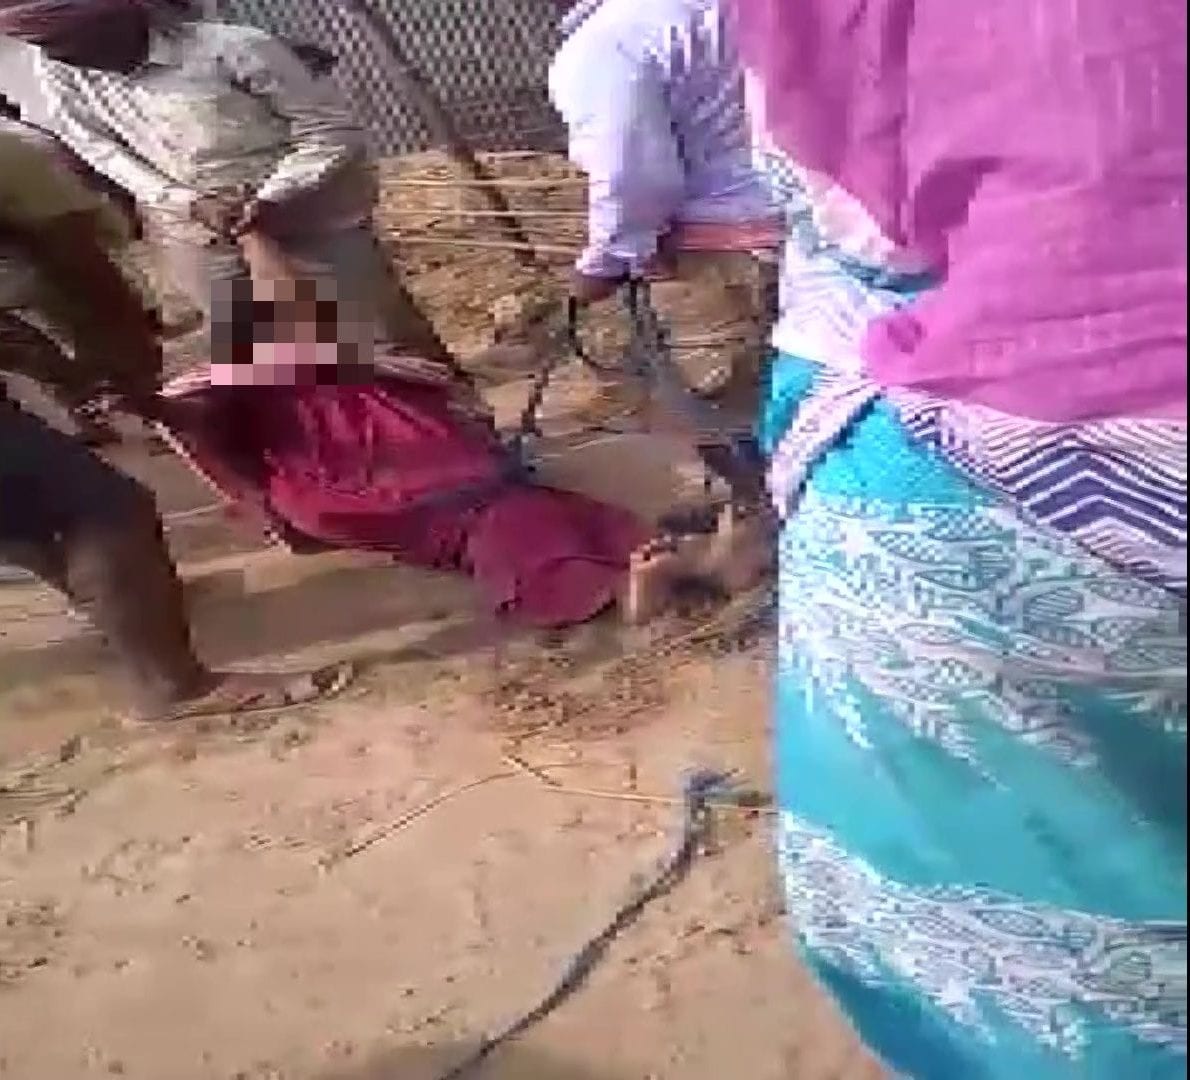 TMC leaders tie lady teacher, drag her on road in Bengal village